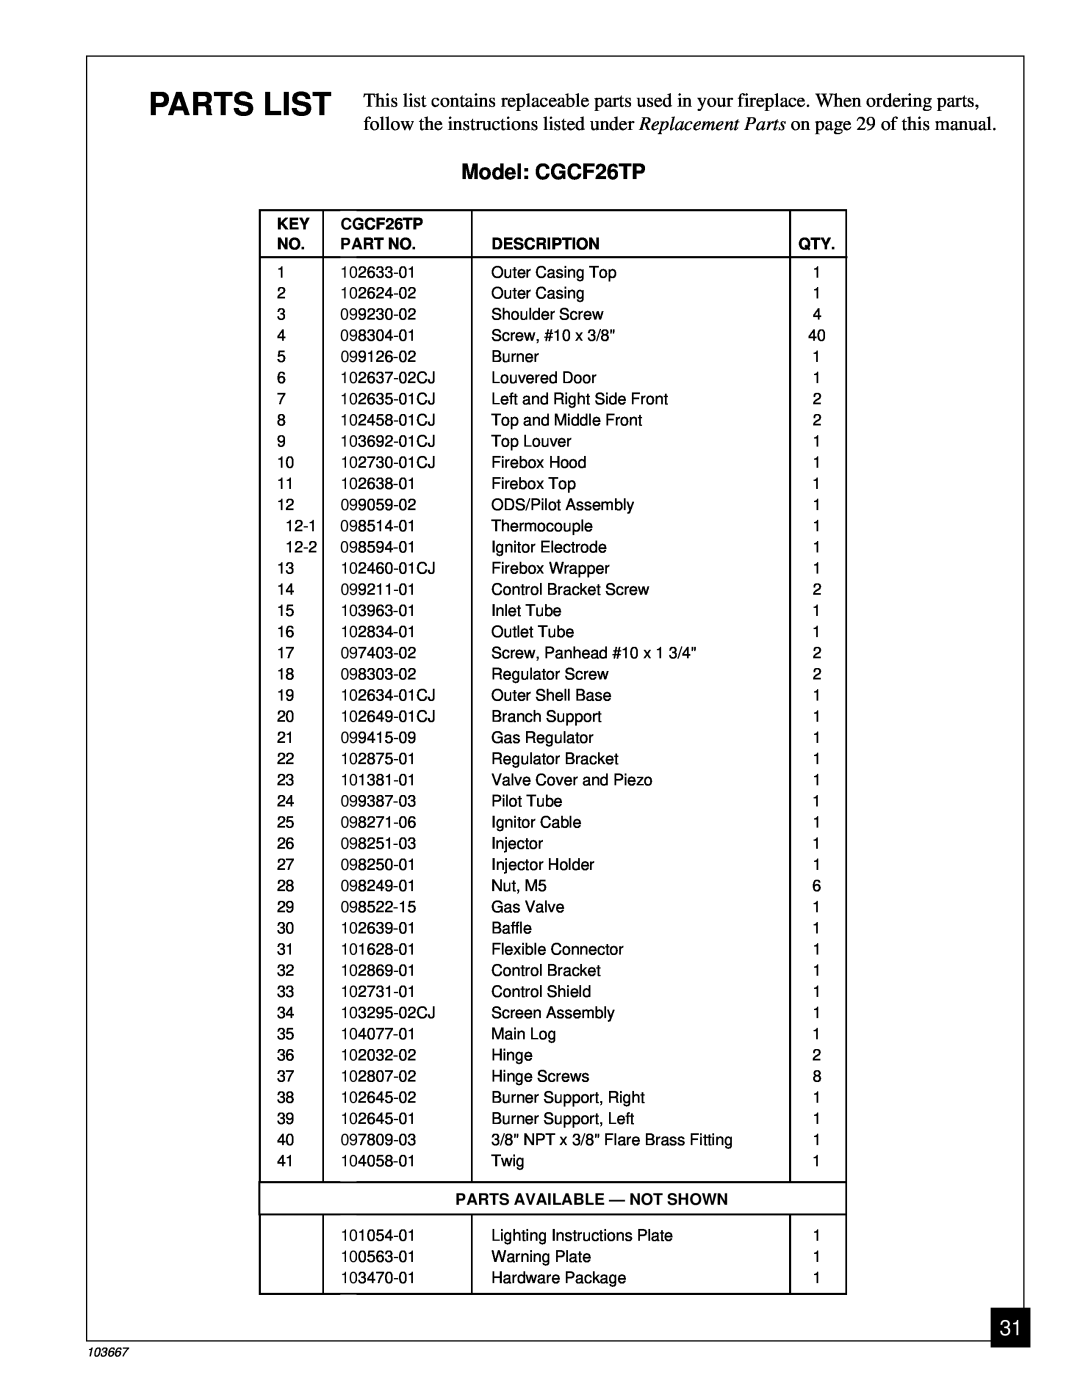 Desa installation manual Parts List, Model CGCF26TP 